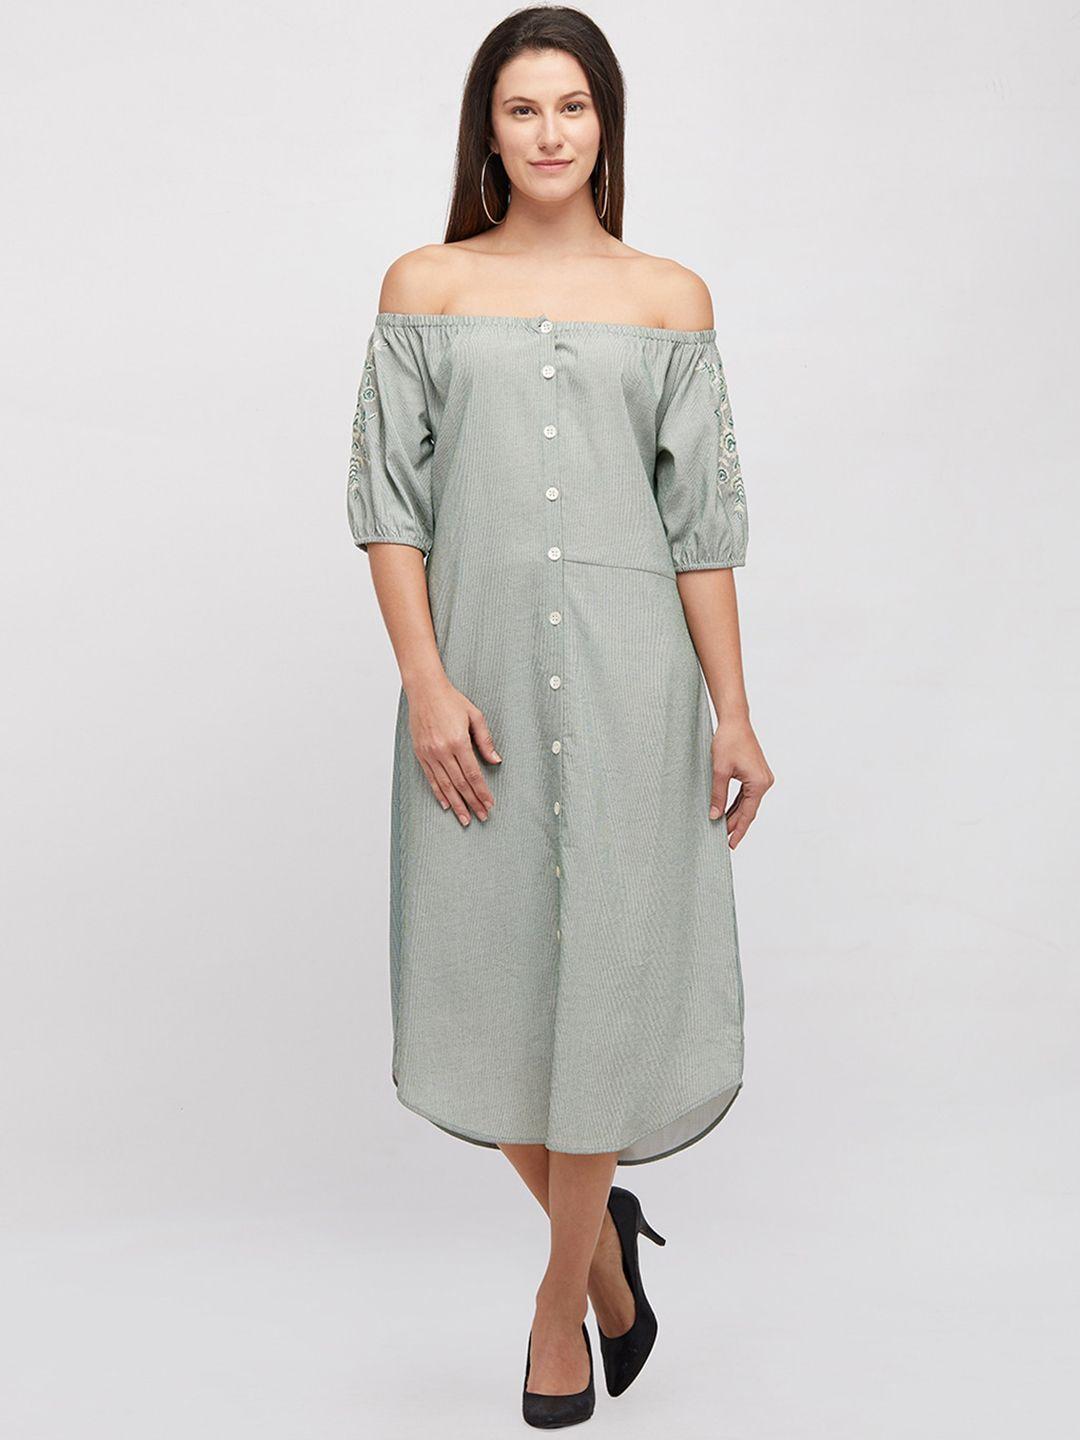 109f-green-&-white-striped-off-shoulder-shirt-midi-dress